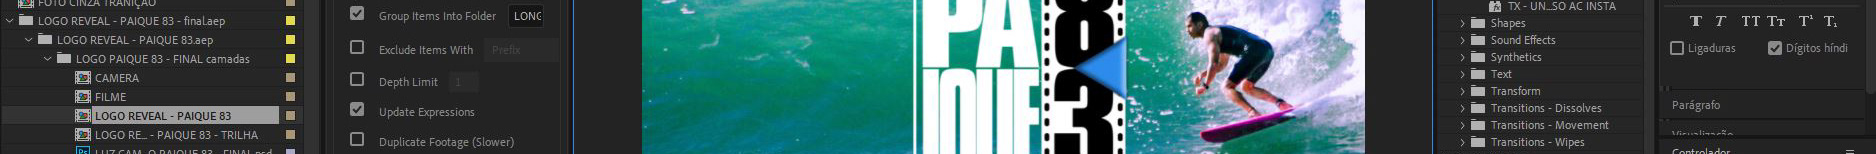 Paulo Riquelme's profile banner